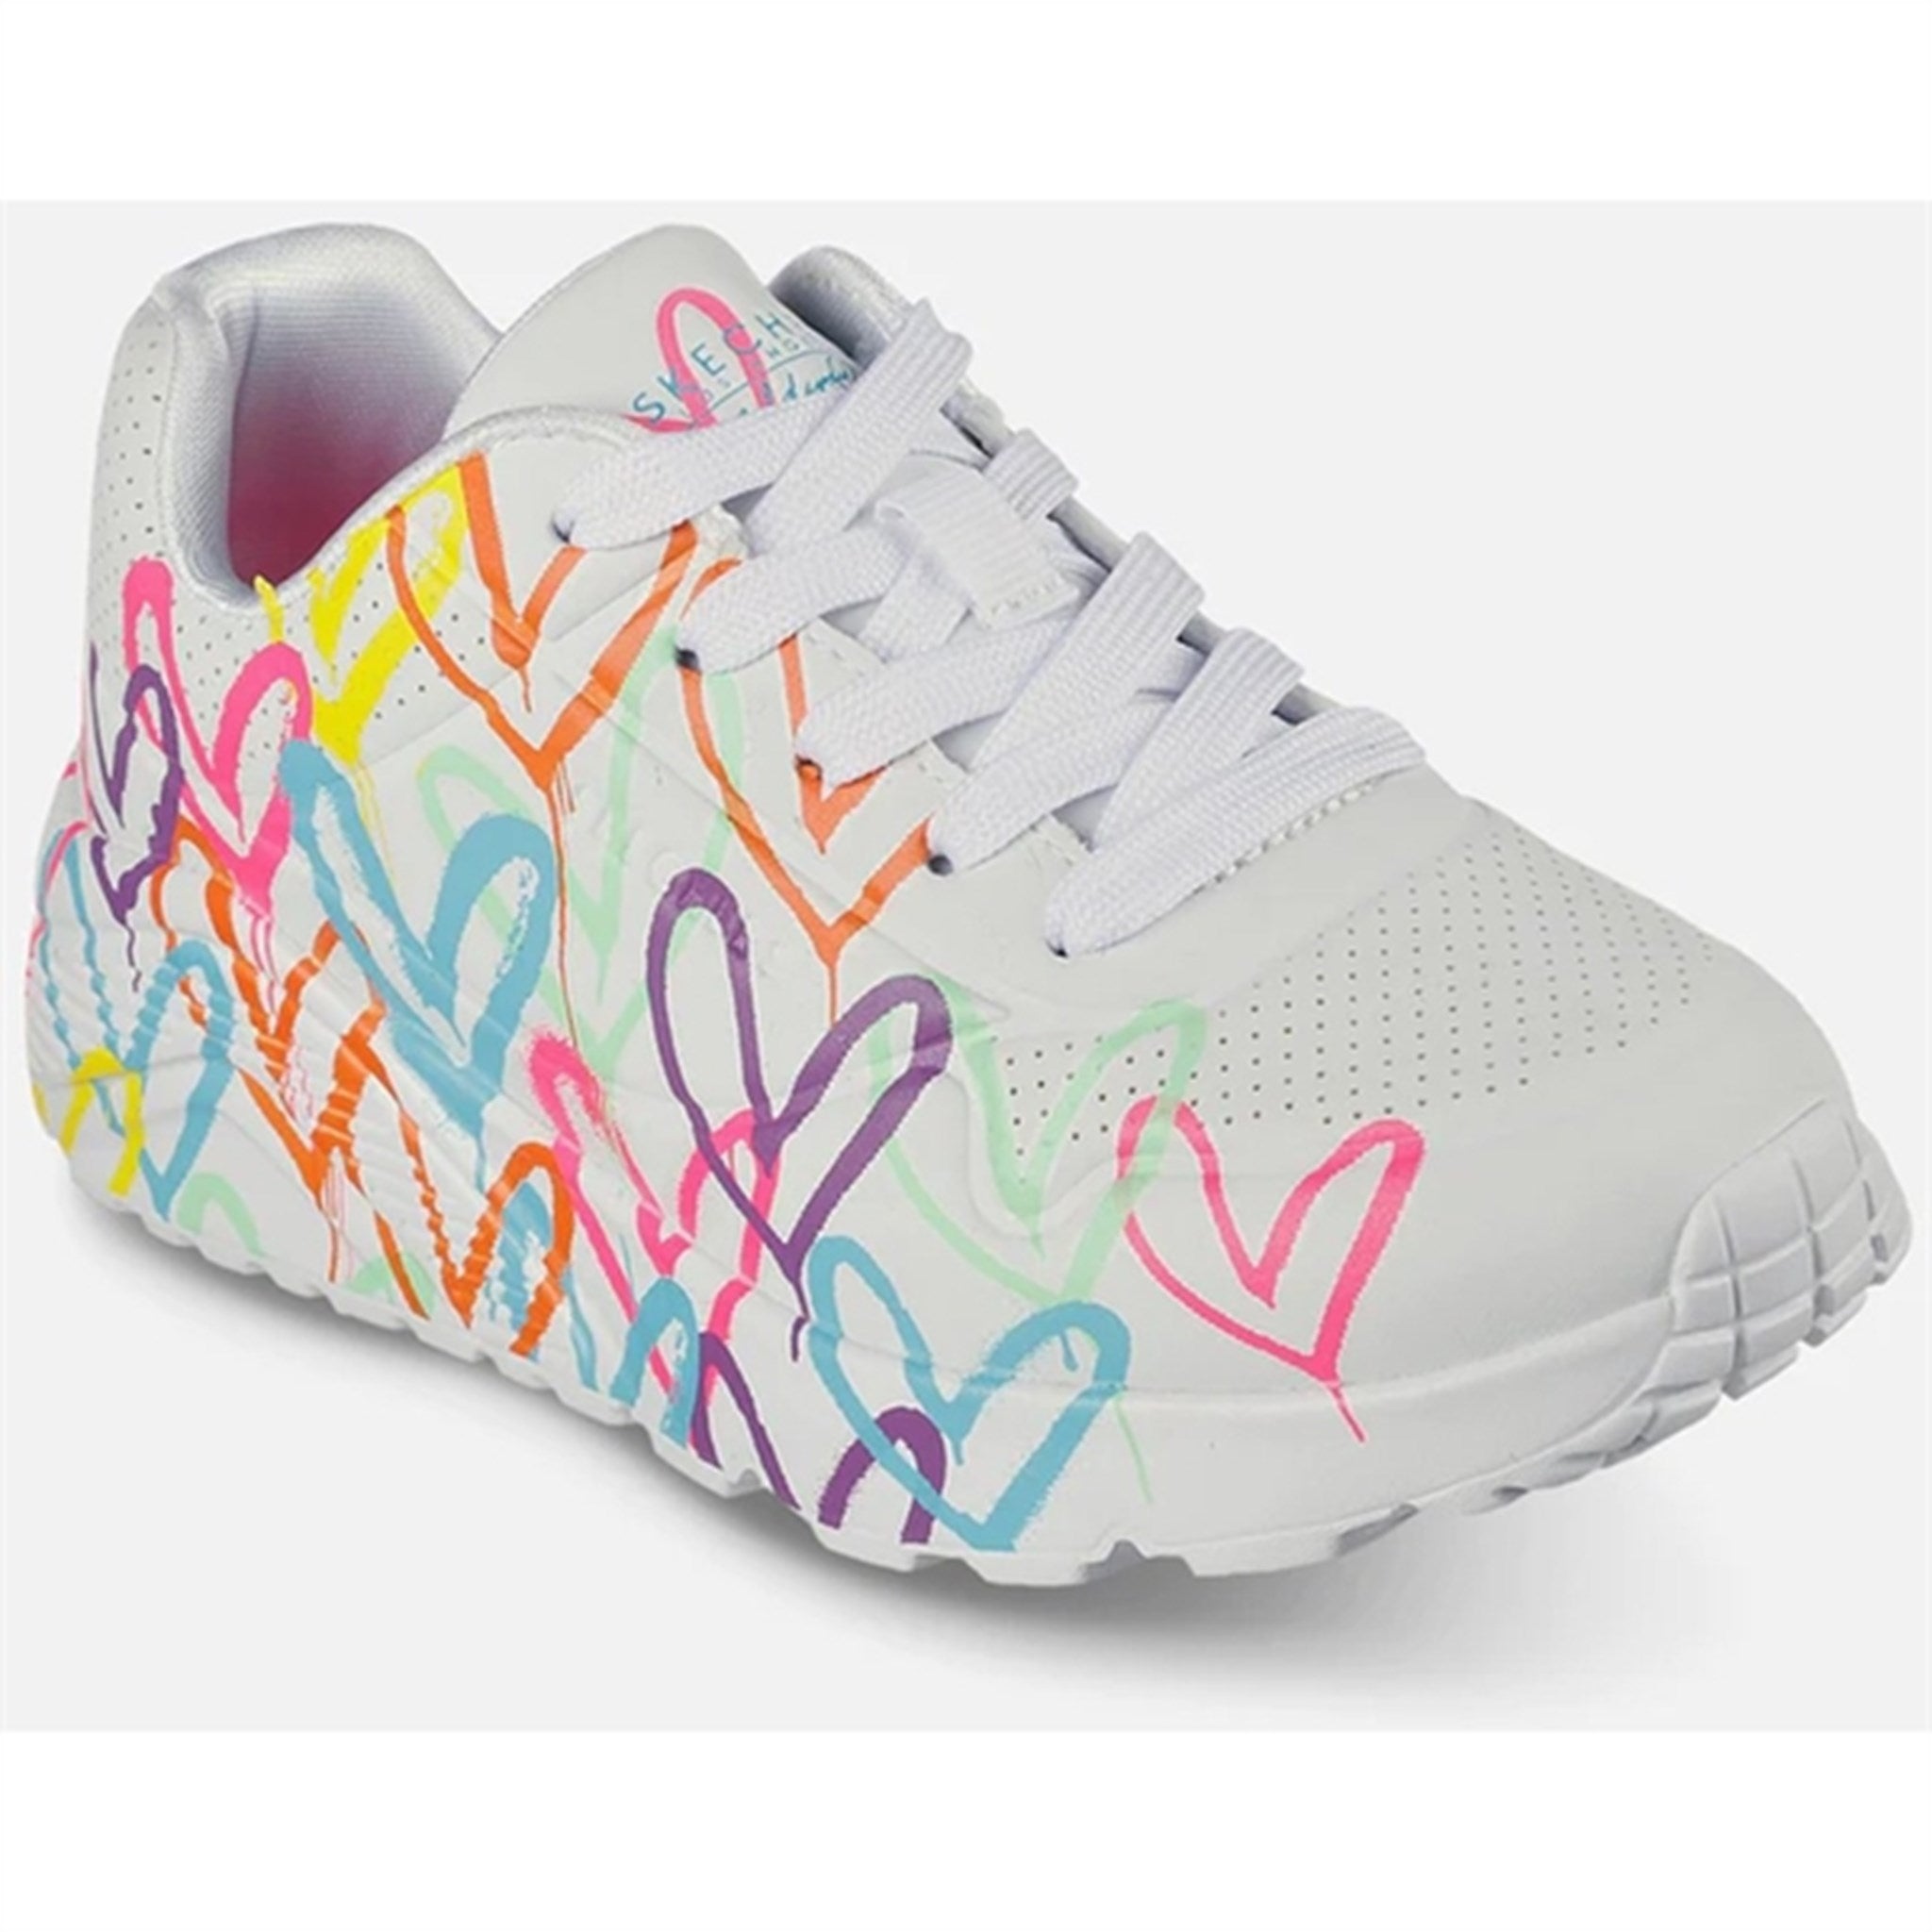 Skechers Girls Uno Sneakers Lite Spread The Love White Multicolor 2